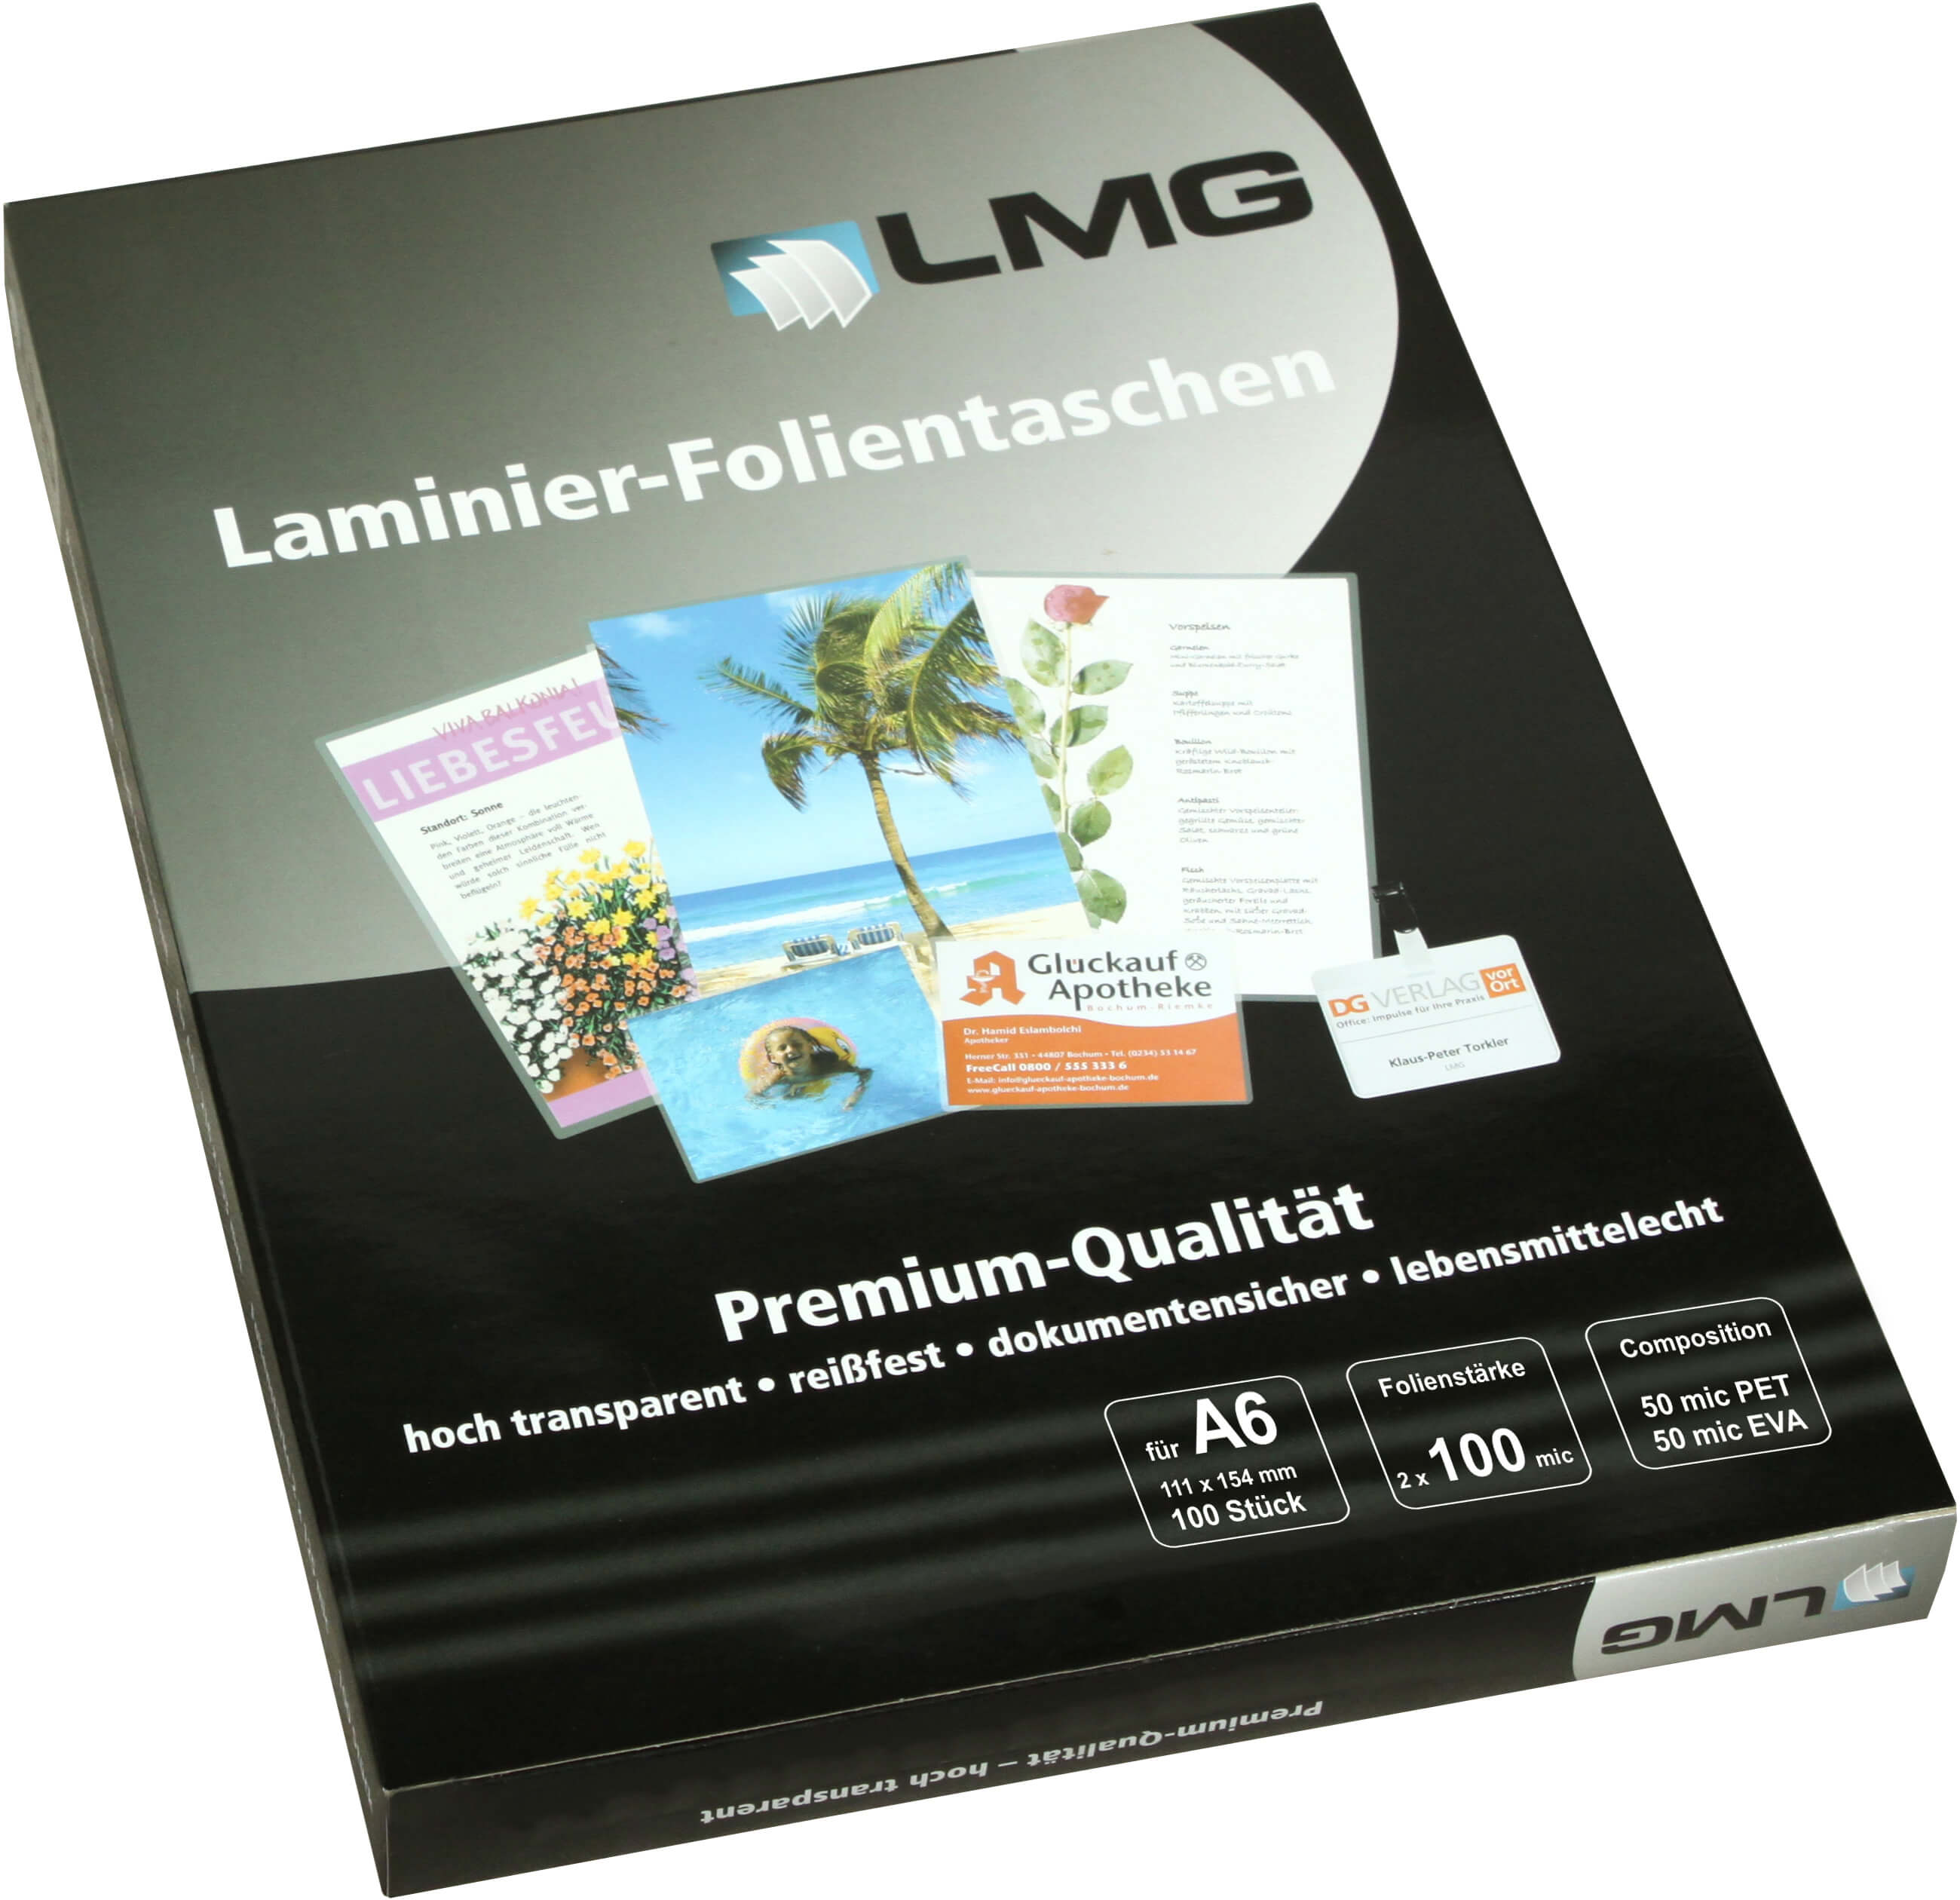 Laminierfolien A6 (111 x 154 mm), 2 x 100 mic, glänzend | Bestnr. LMGA6-100